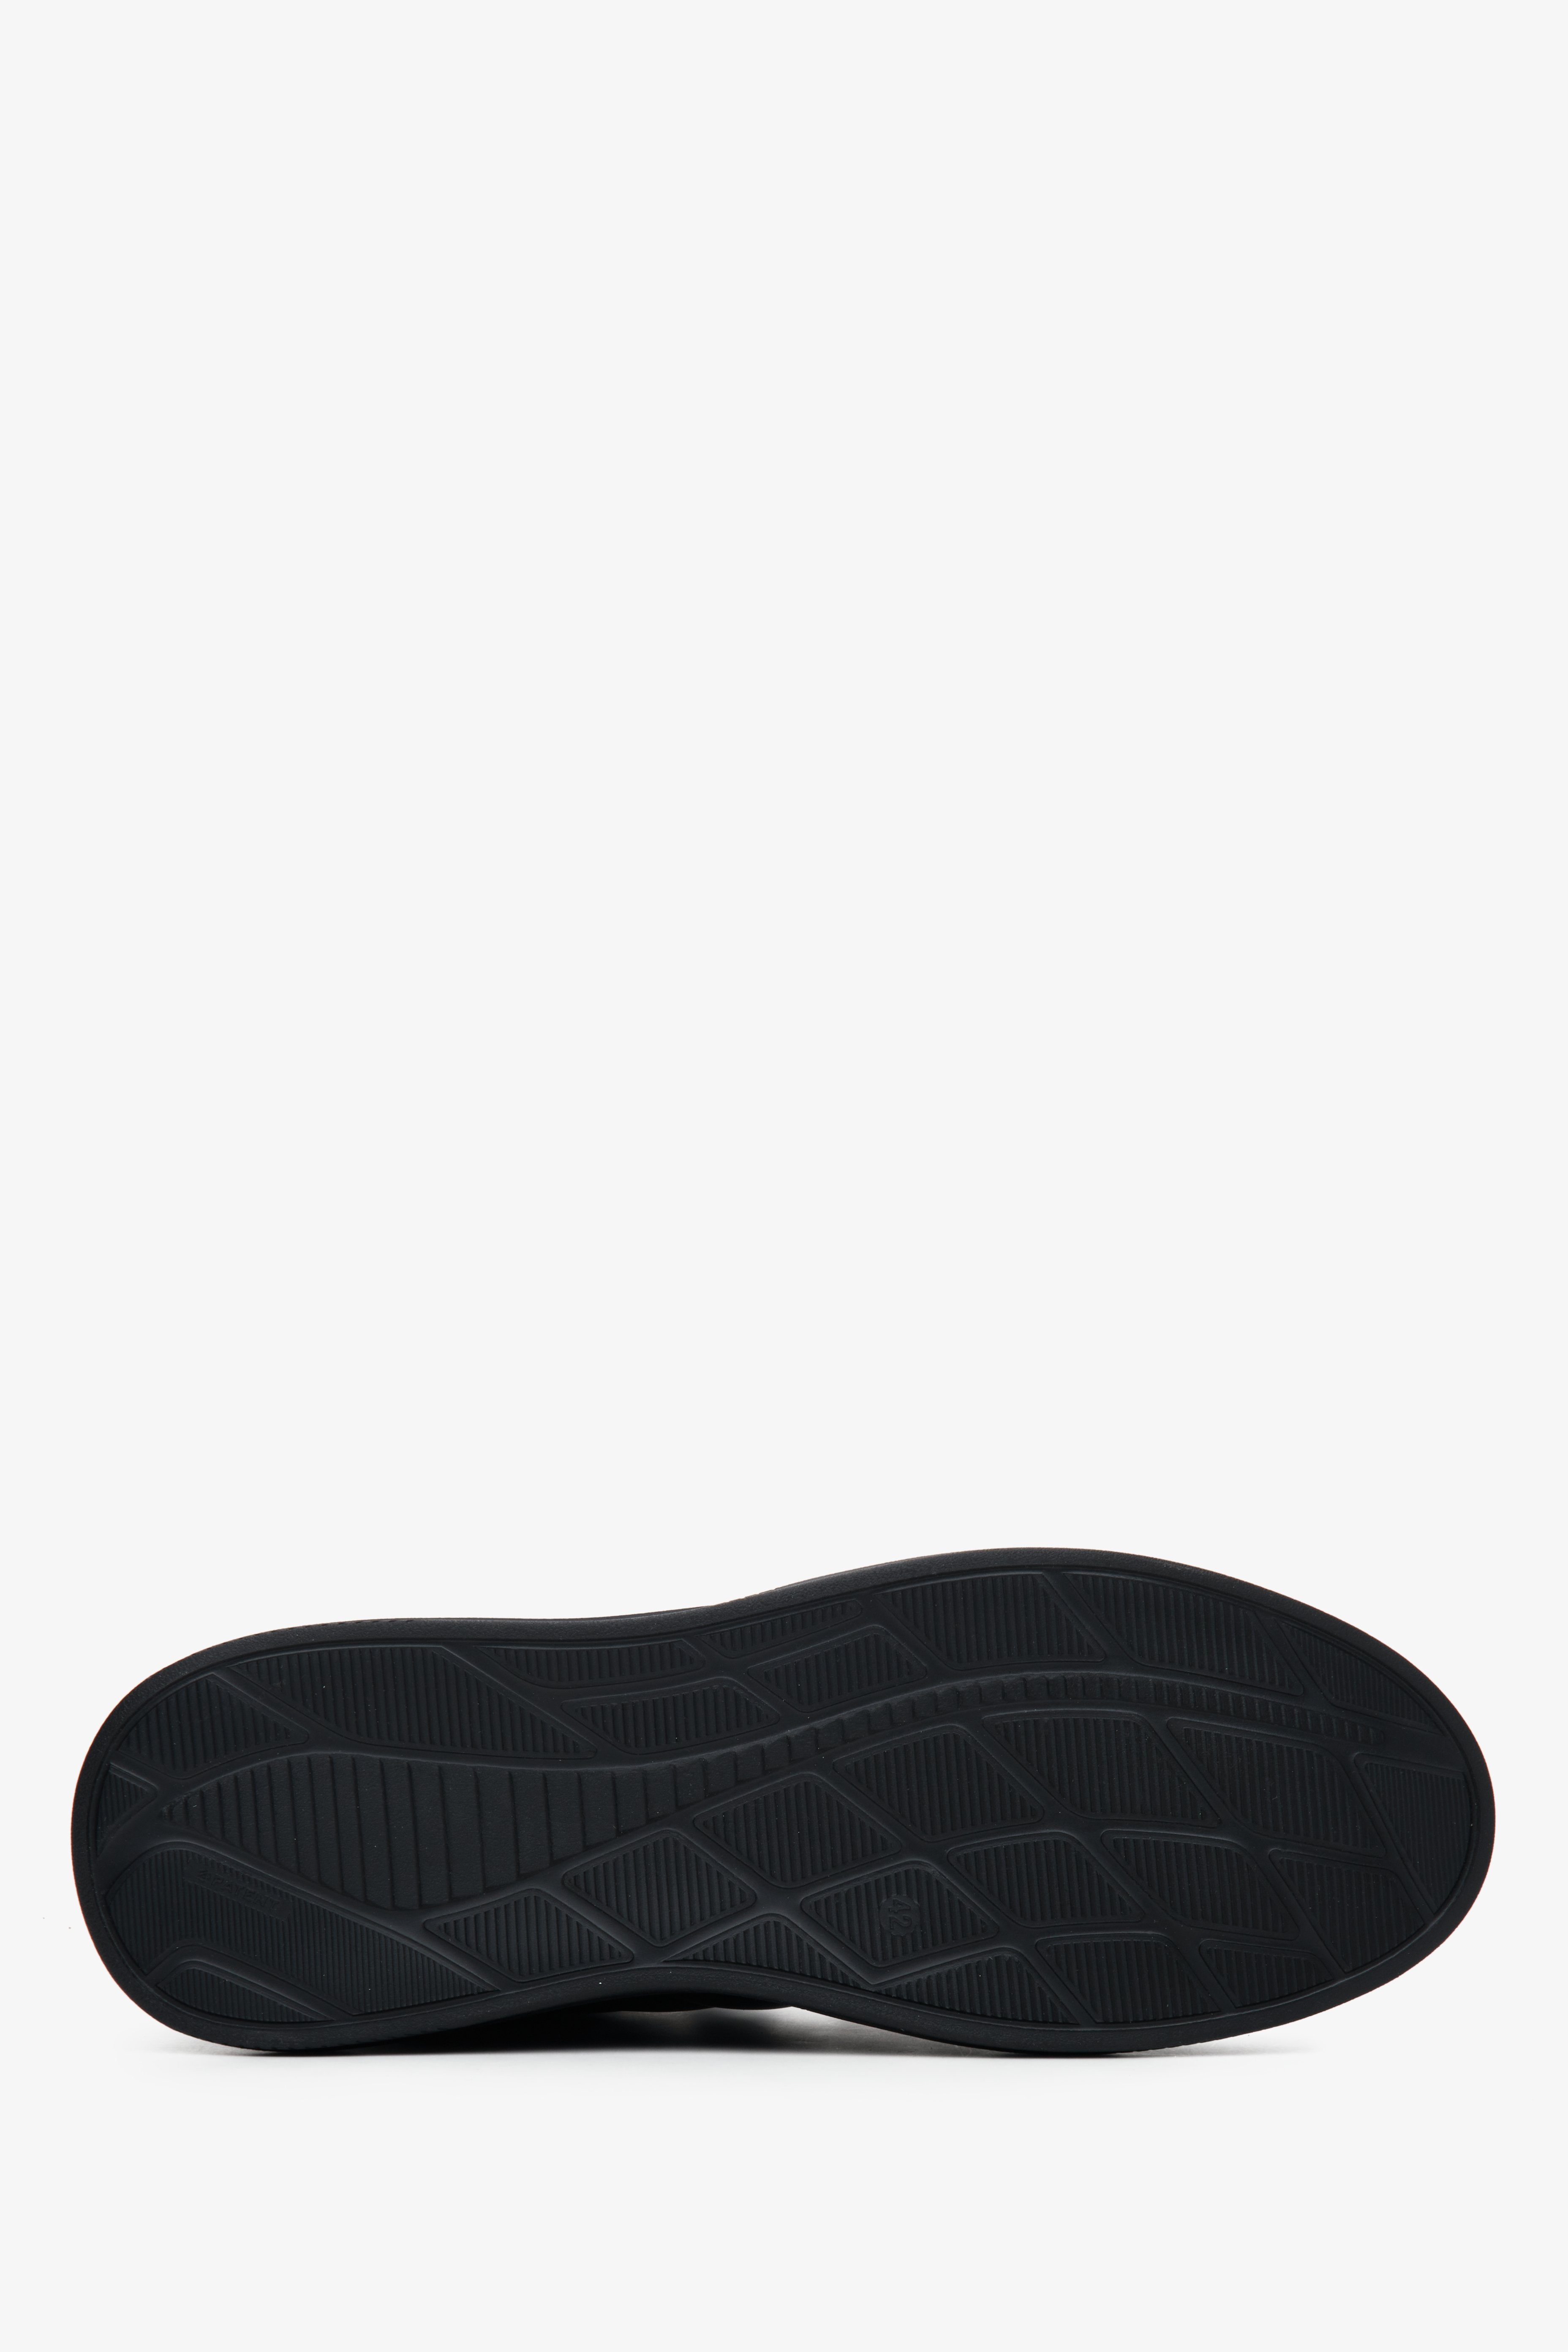 Męskie, wysokie sneakersy w kolorze czarnym marki Estro - zbliżenie na podeszwę buta.